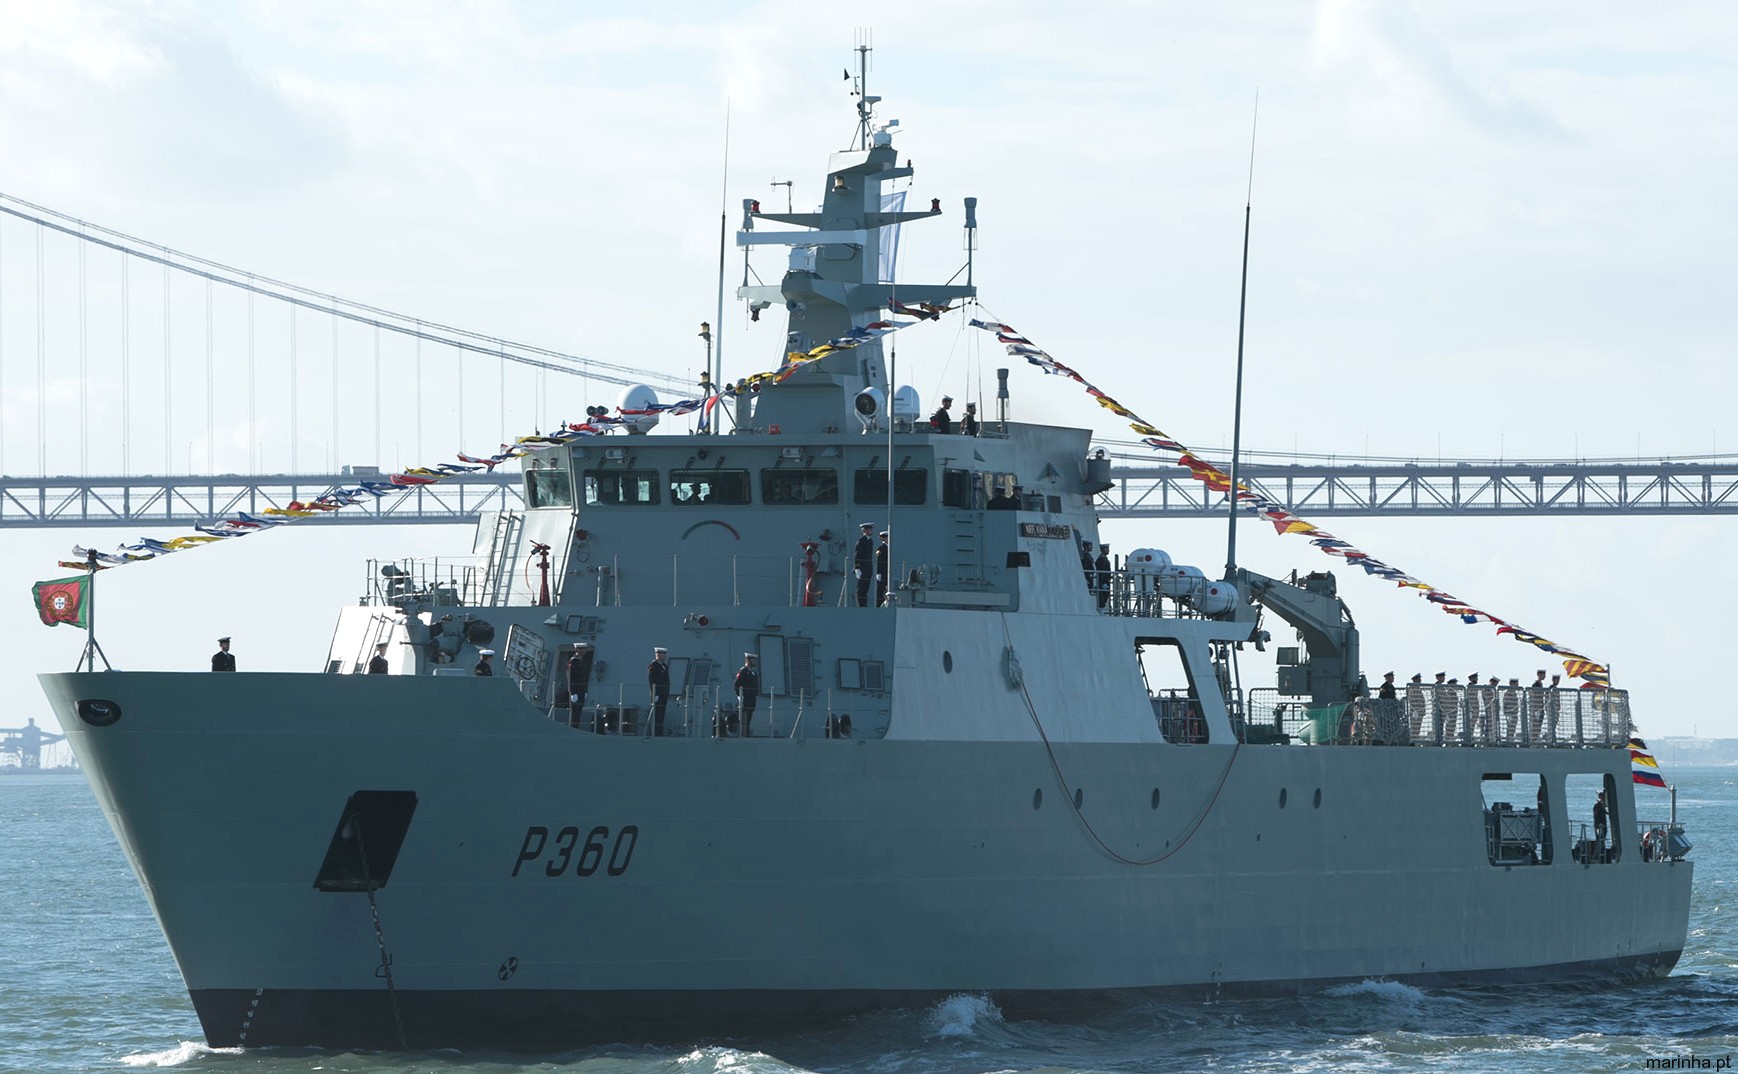 p-360 nrp viana do castelo class offshore patrol vessel opv portuguese navy marinha npo2000 08